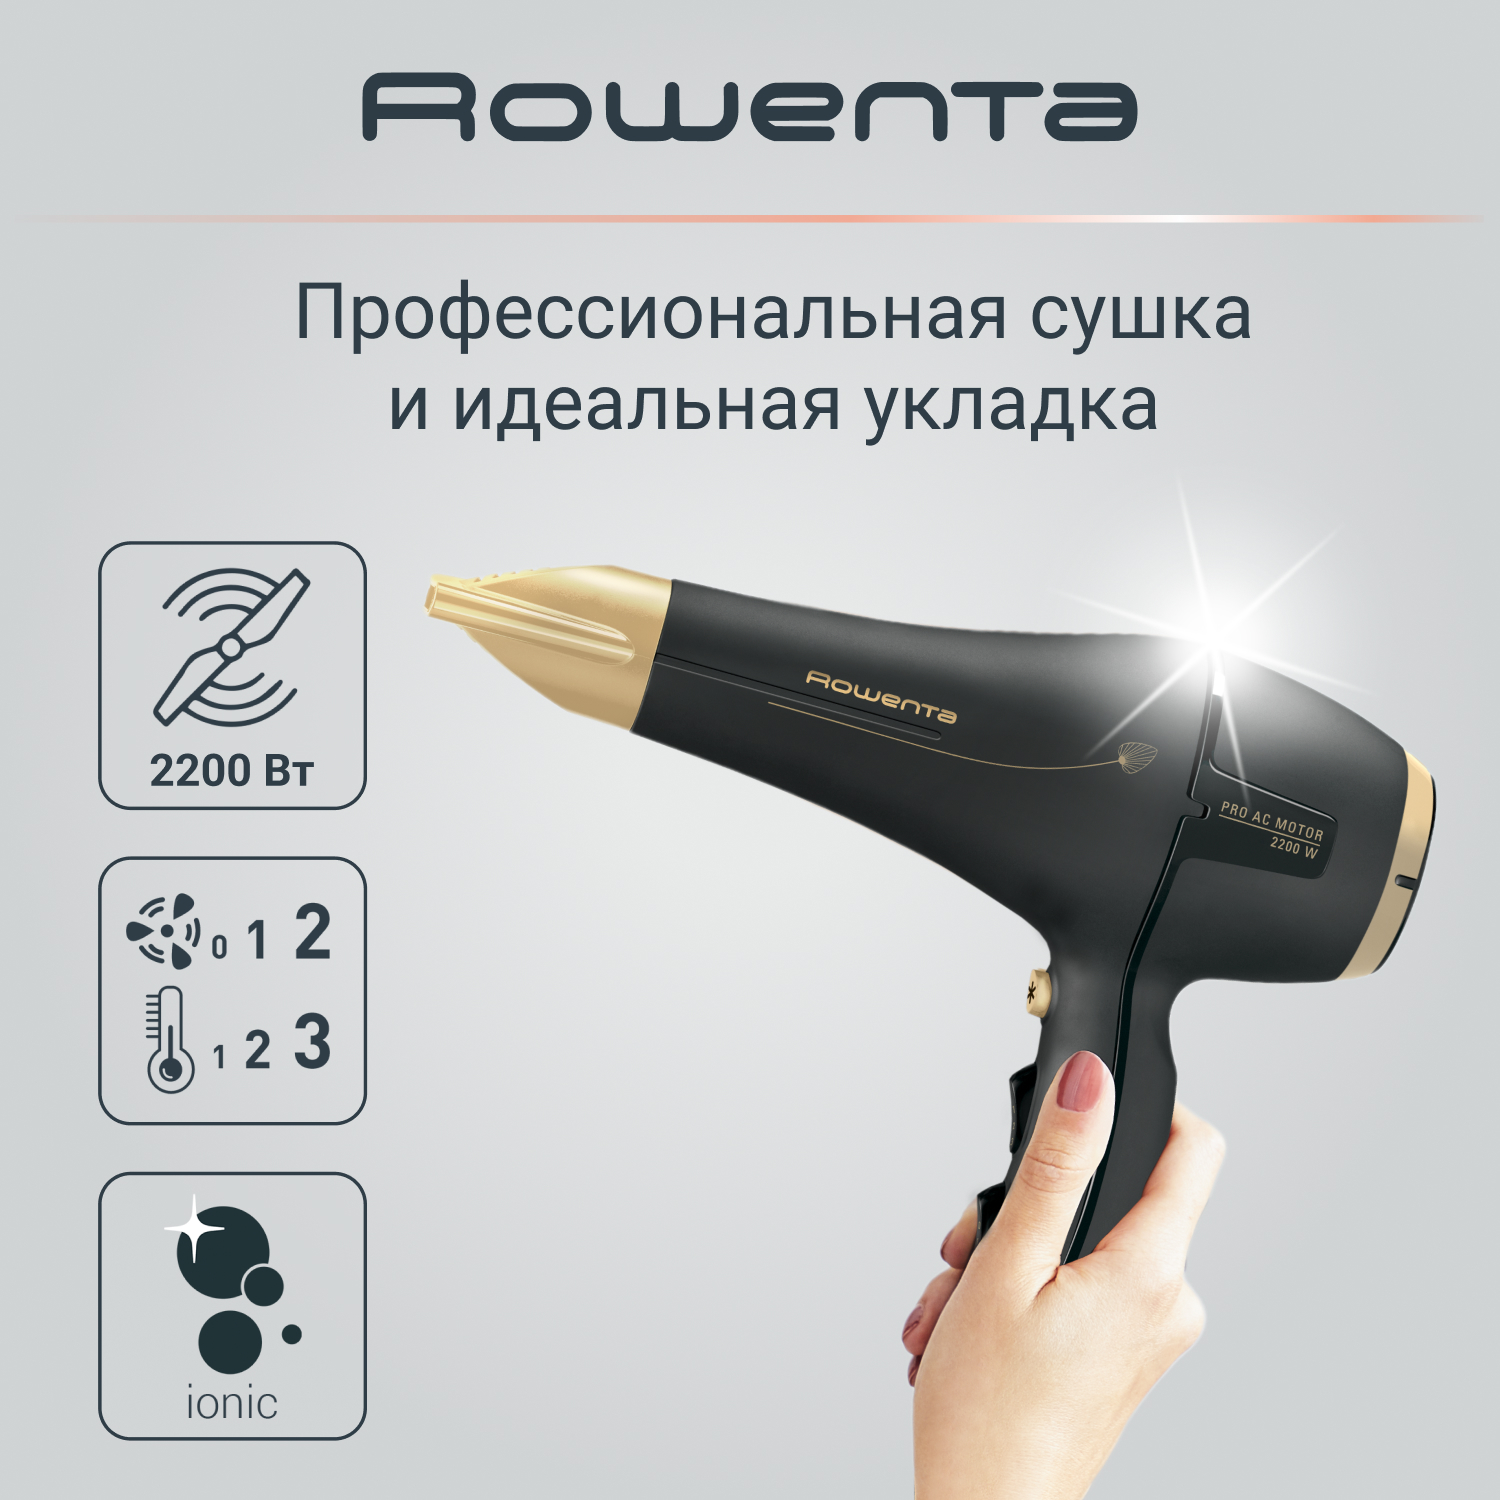 фен rowenta signature pro ac cv7810f0 Фен Rowenta Signature Pro AC Magic Nature CV7846F0, 2200 Вт, черный/золотой